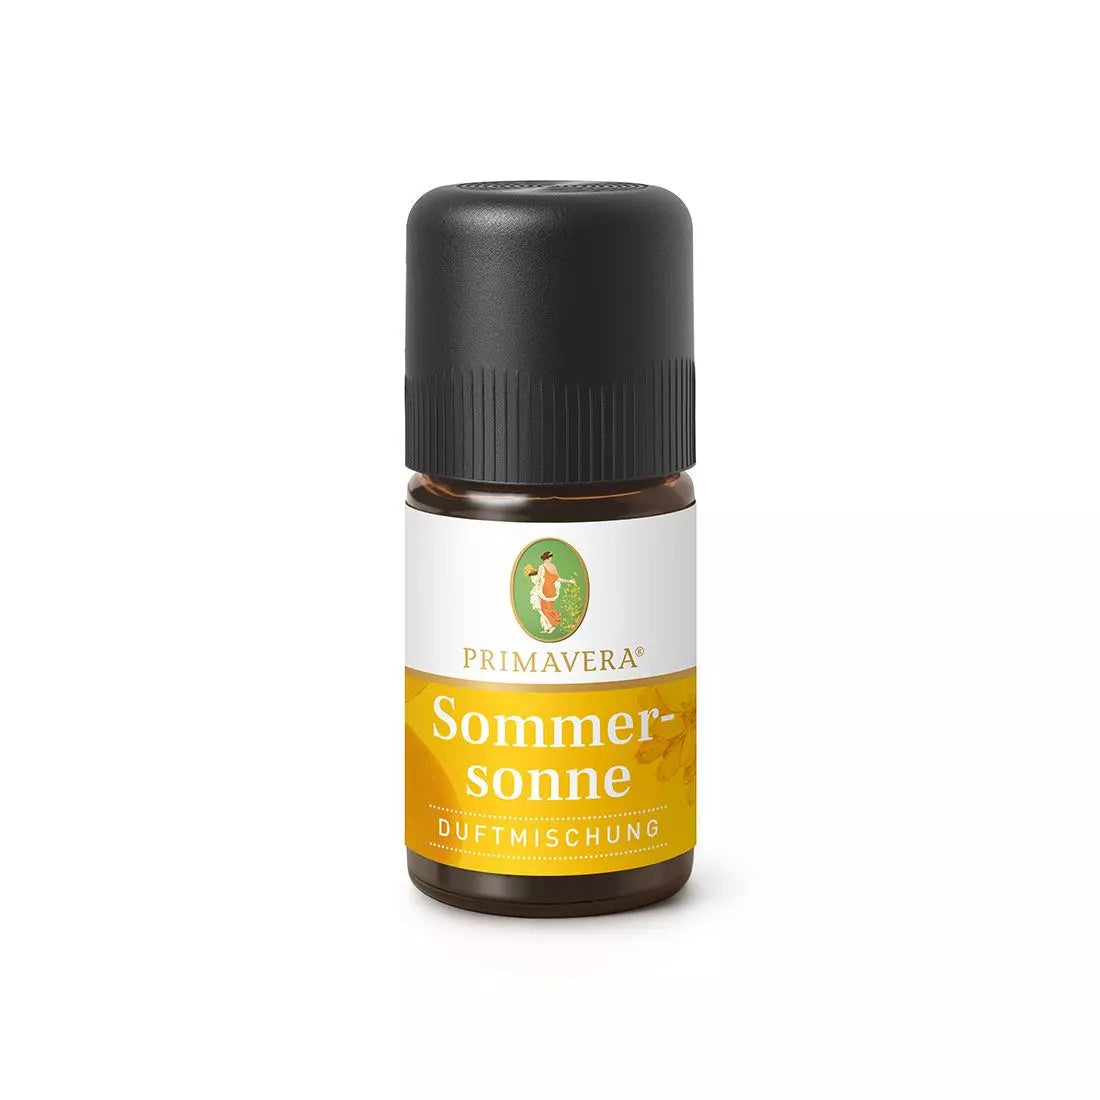 PRIMAVERA Sommersonne Duftmischung - 5 ml